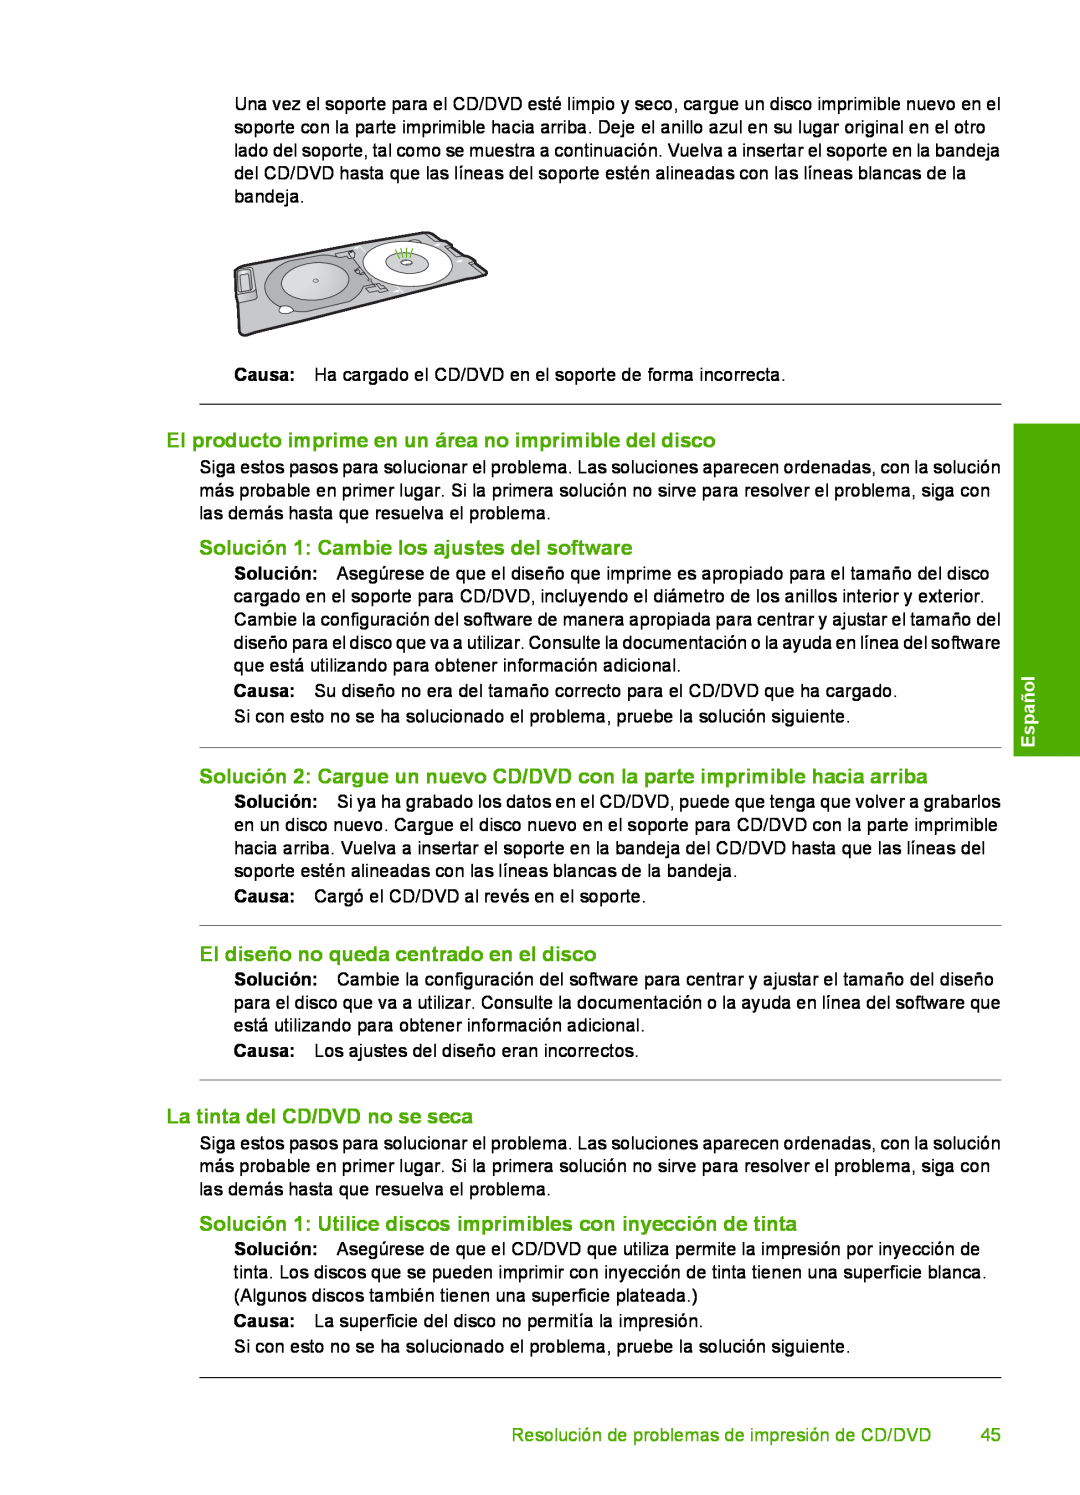 HP D7560 manual El producto imprime en un área no imprimible del disco, Solución 1 Cambie los ajustes del software, Español 